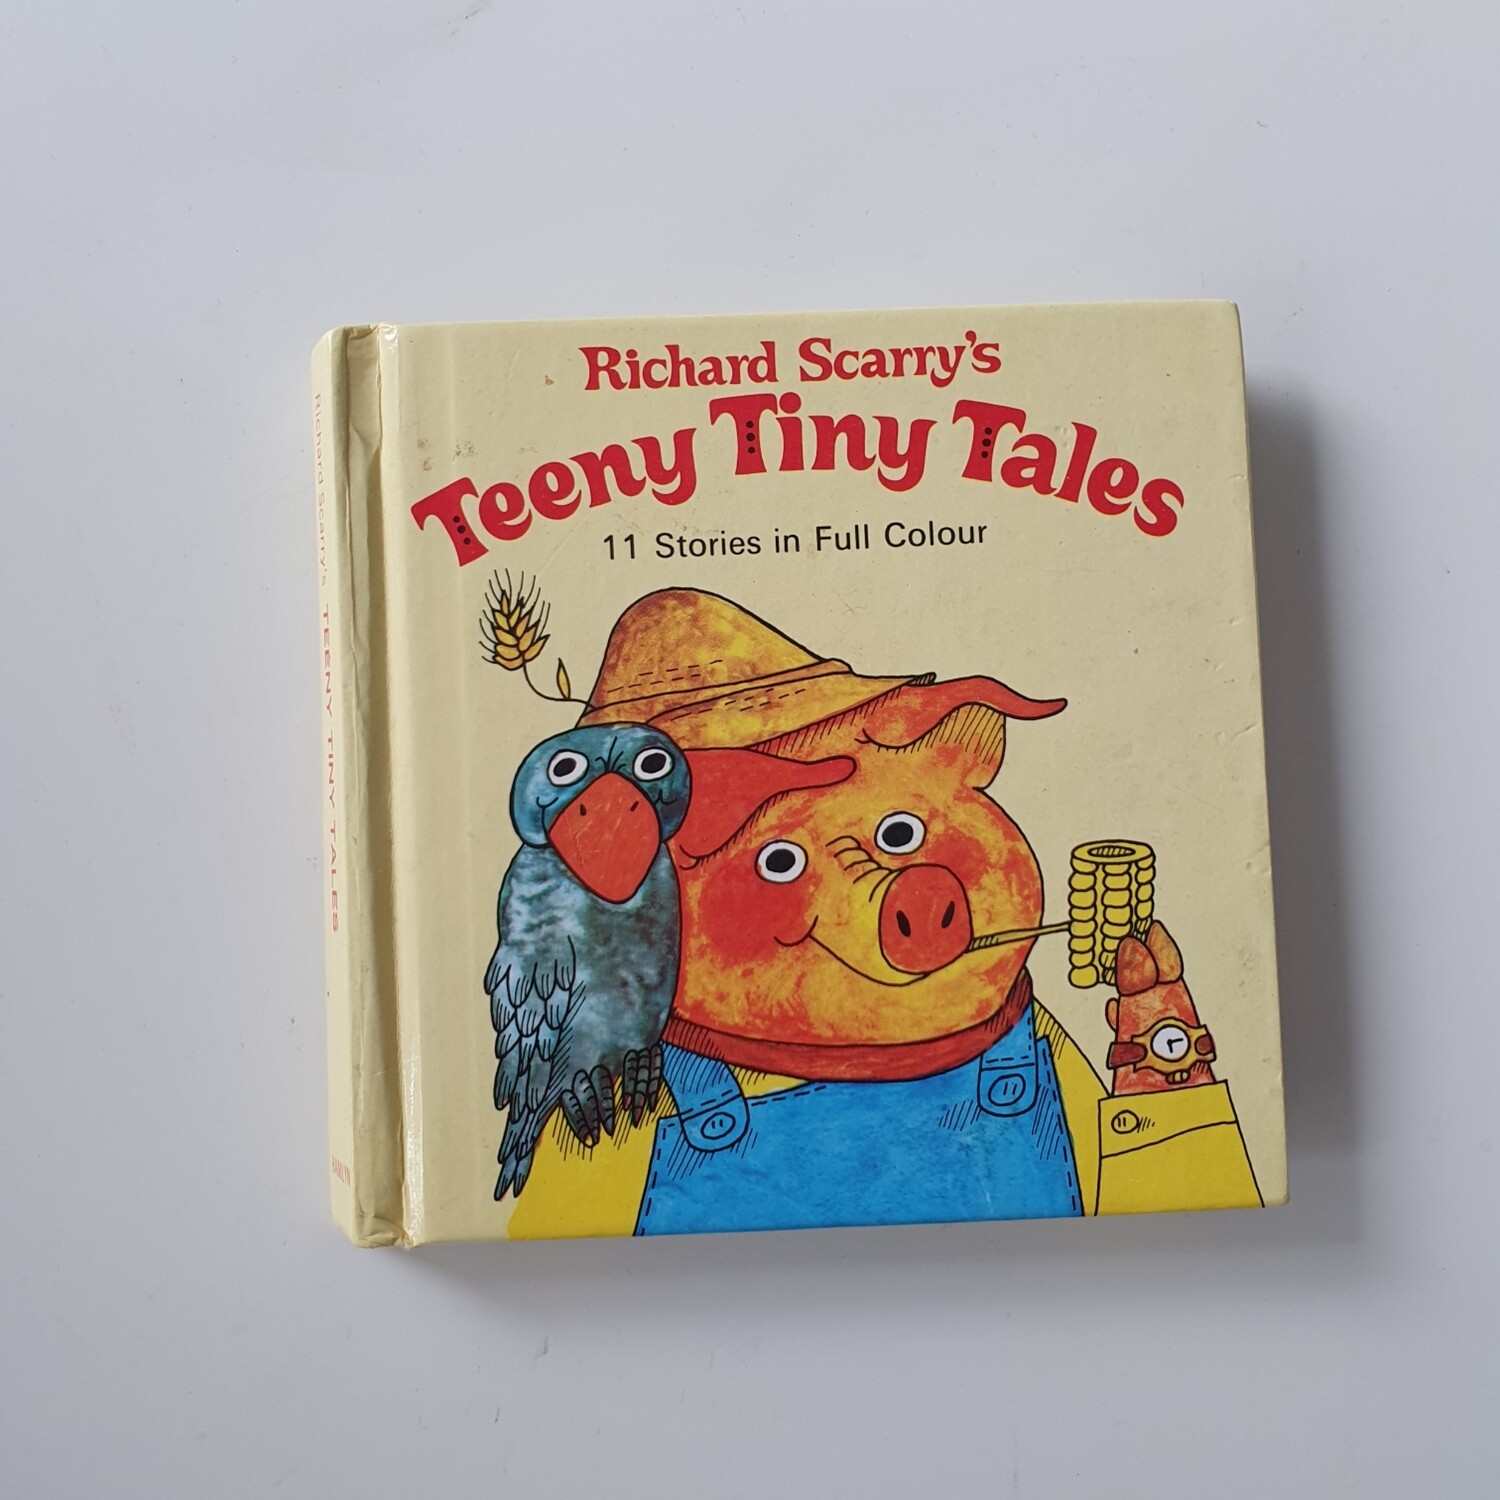 Richard Scarry's Teeny Tiny Tales